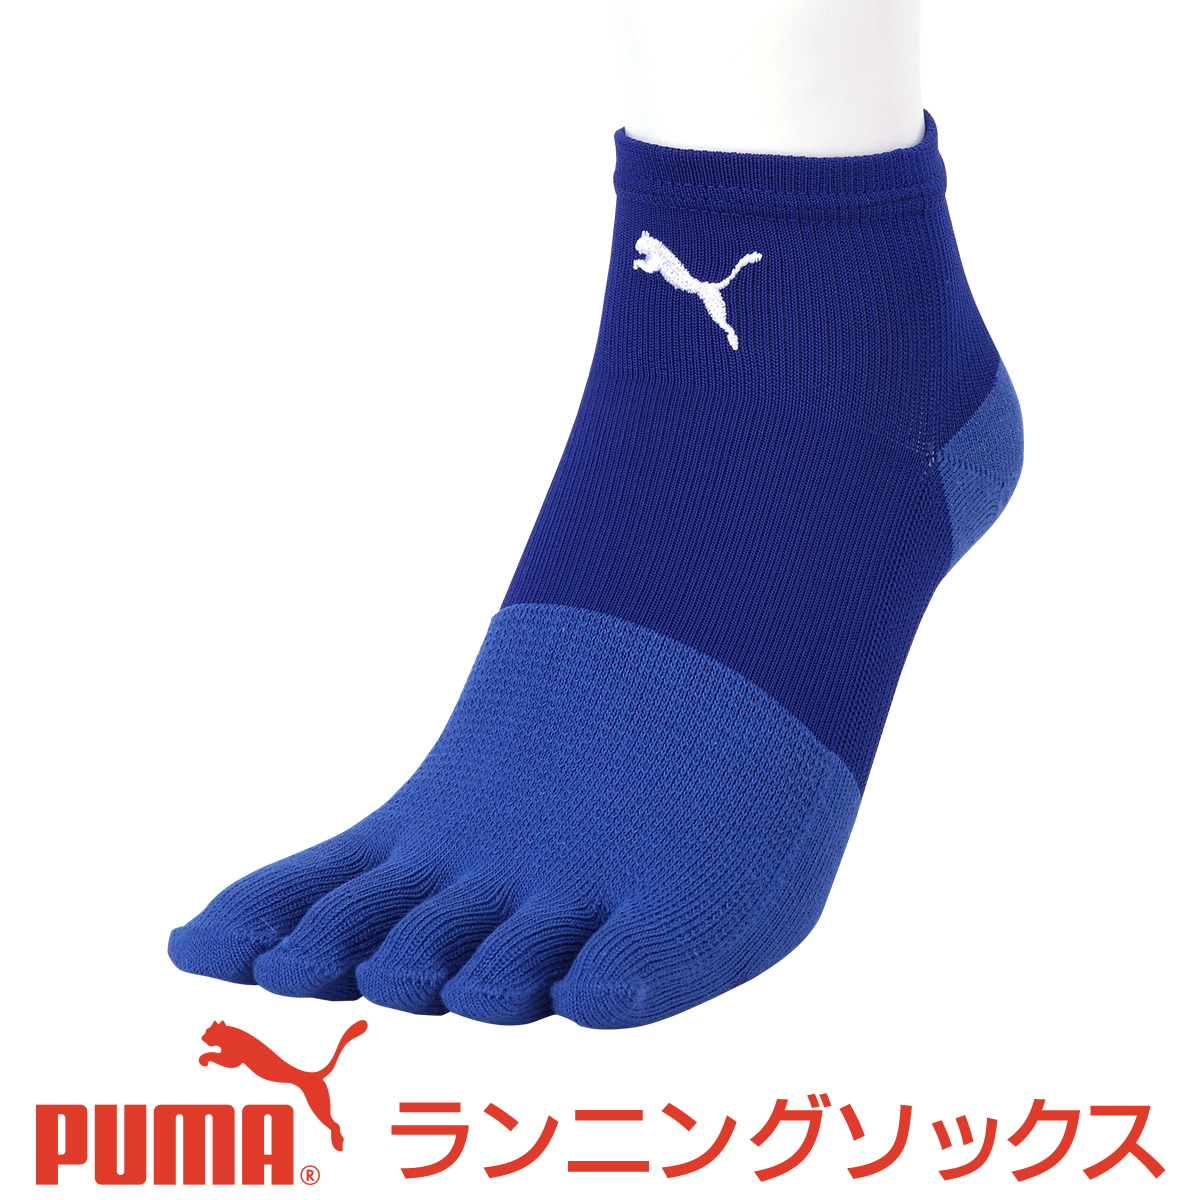 セール！30％OFF PUMA （ プーマ ） メンズ 靴下 足底滑り止め付き アーチサポート  日本製 5本指 マラソン ランニング ソックス  大きいサイズ 28cm 29cm もあり男性 メンズ プレゼント 贈答 ギフト バレンタイン2822-204